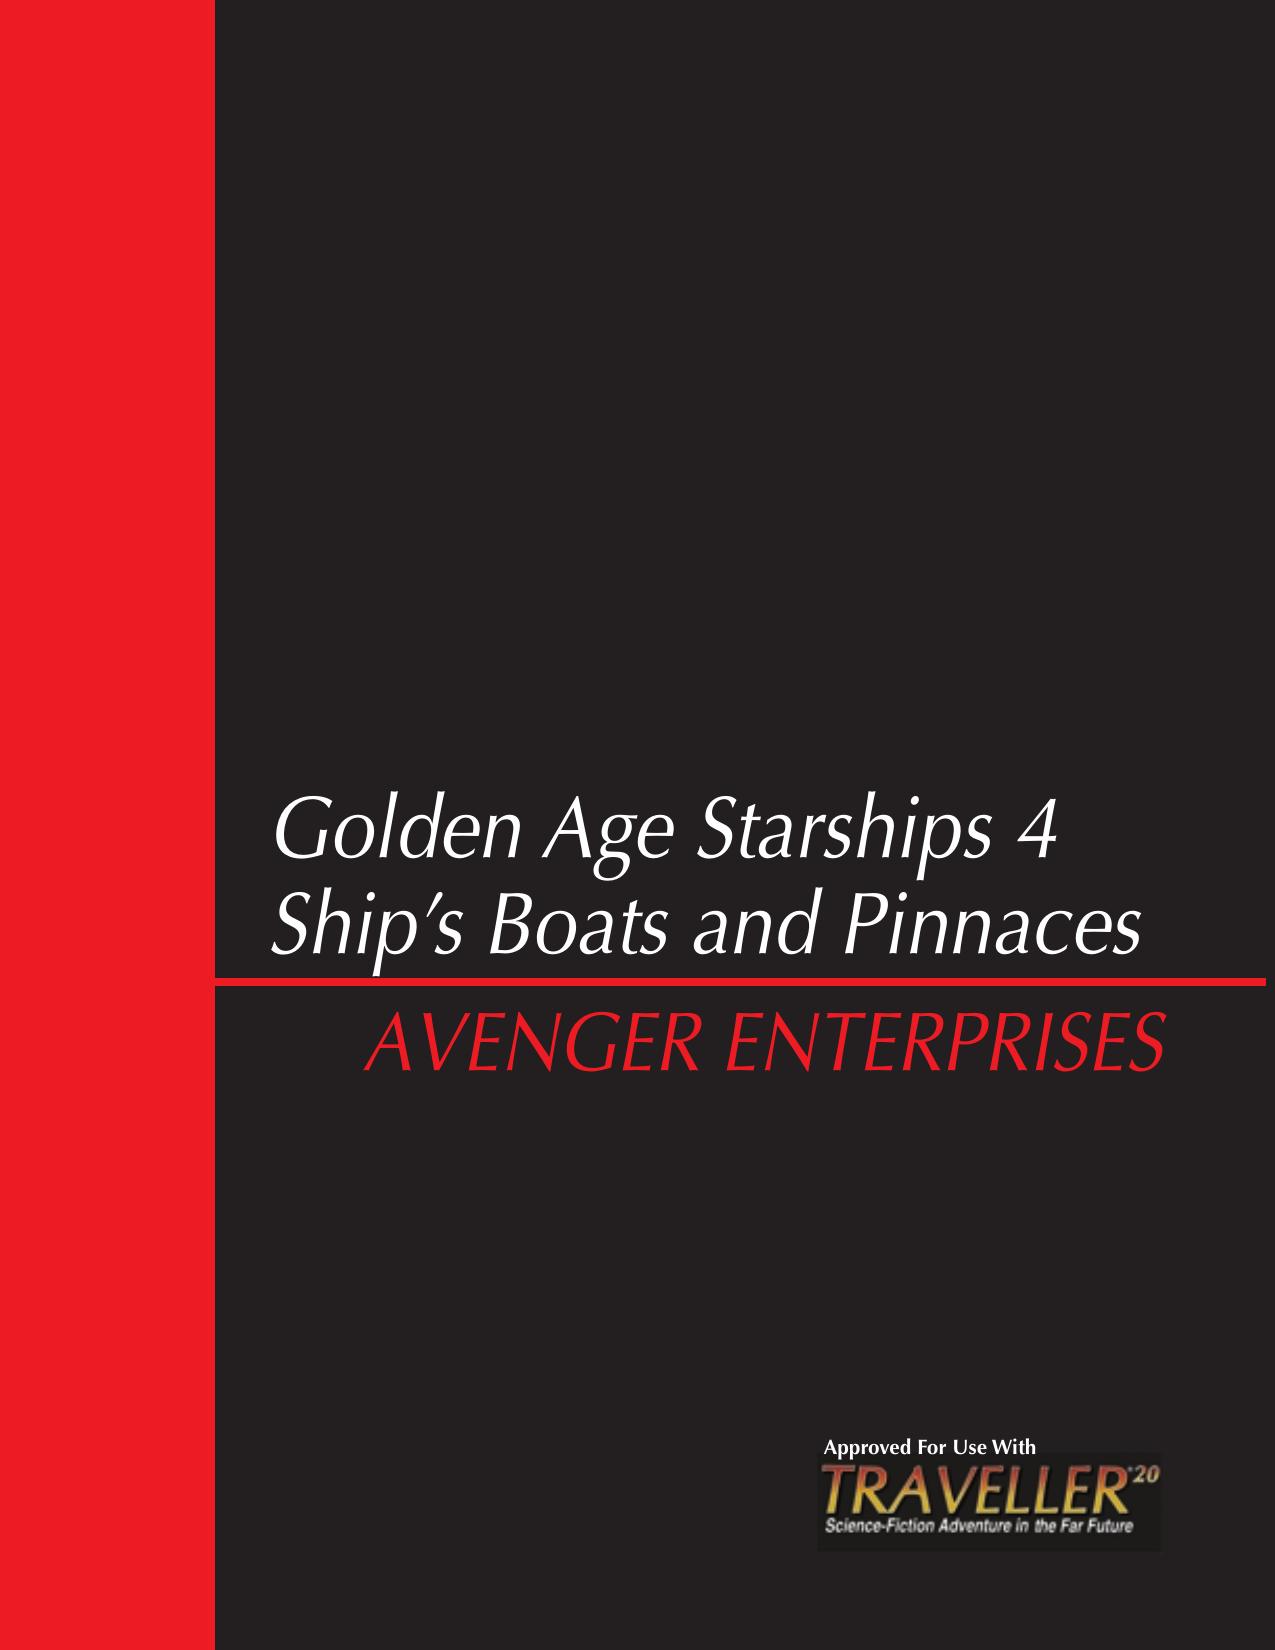 Ship's Boats & Pinnaces